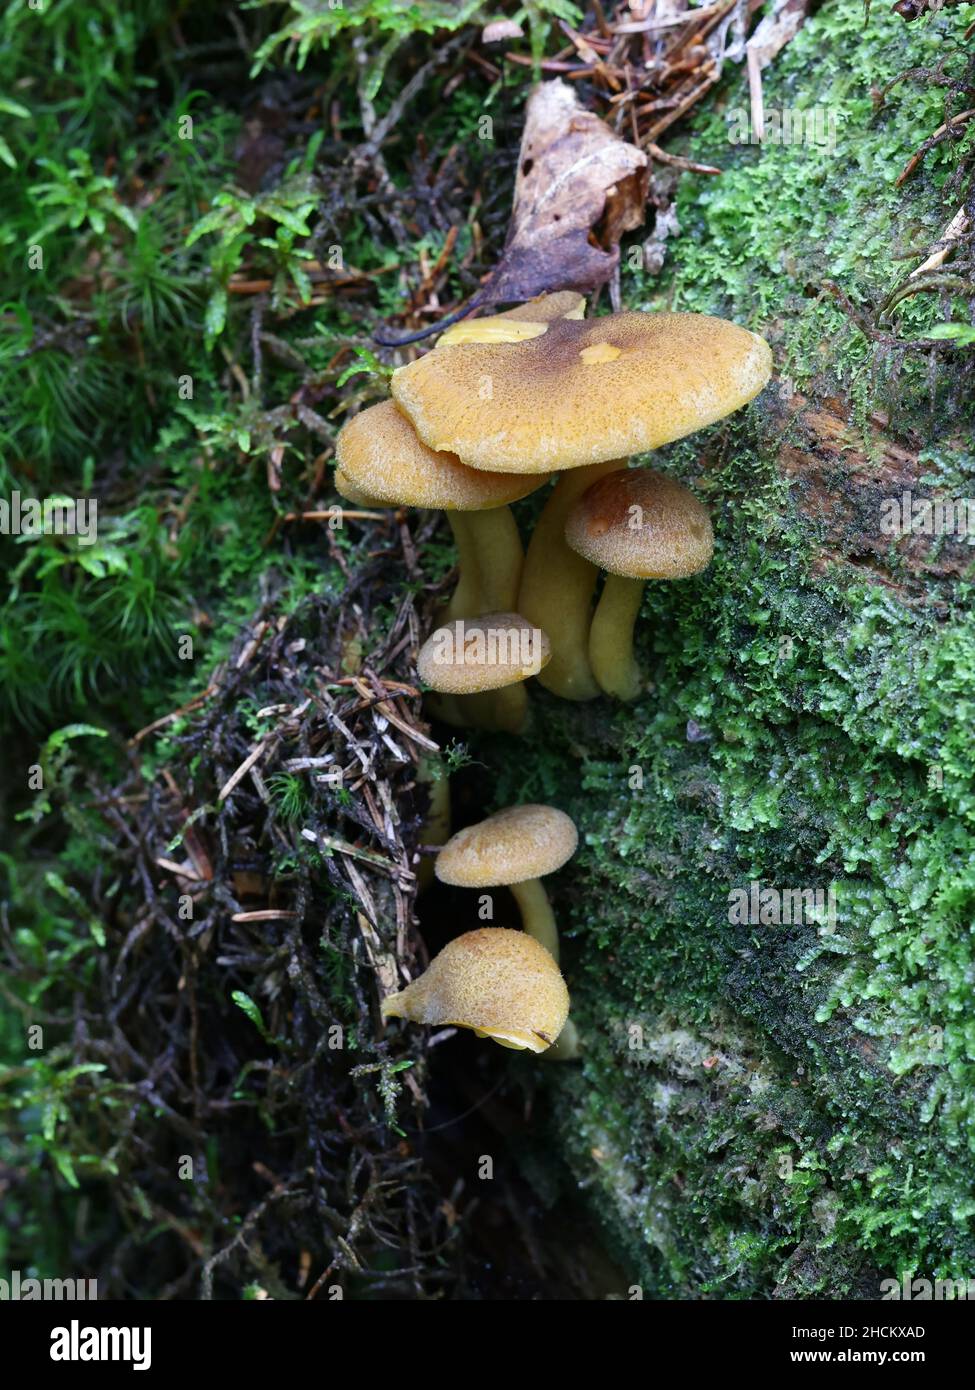 Tricholomopsis decora, connu sous le nom de Prunes et Custard, champignons sauvages de Finlande Banque D'Images